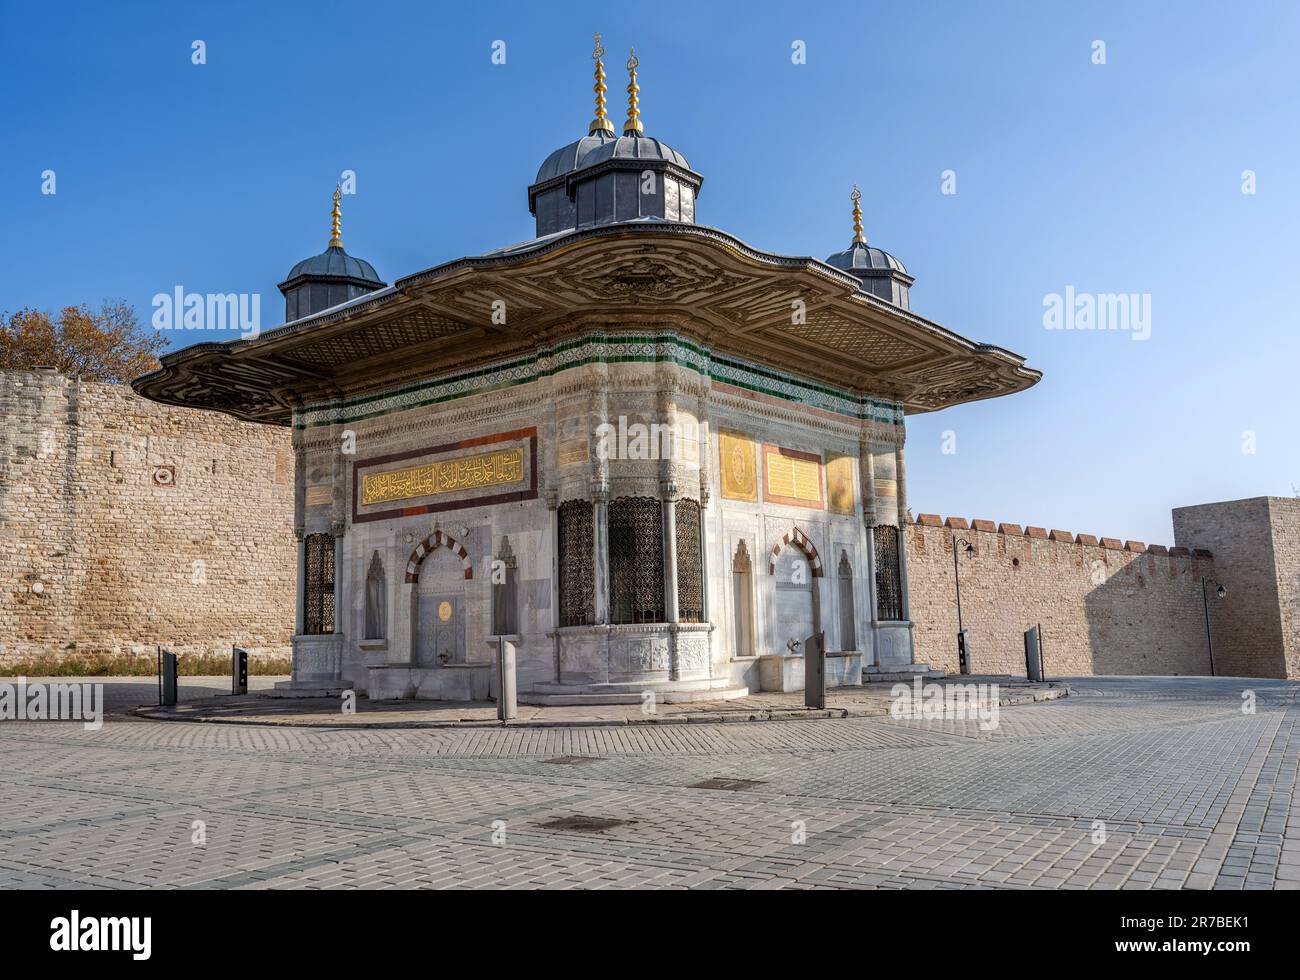 ISTANBUL, TURCHIA - DICEMBRE 5: Fontana di Ahmed III La fontana è stata costruita nel 1728. Si trova tra Hagia Sophia e l'entrata del Palazzo Topkapi, Istan Foto Stock